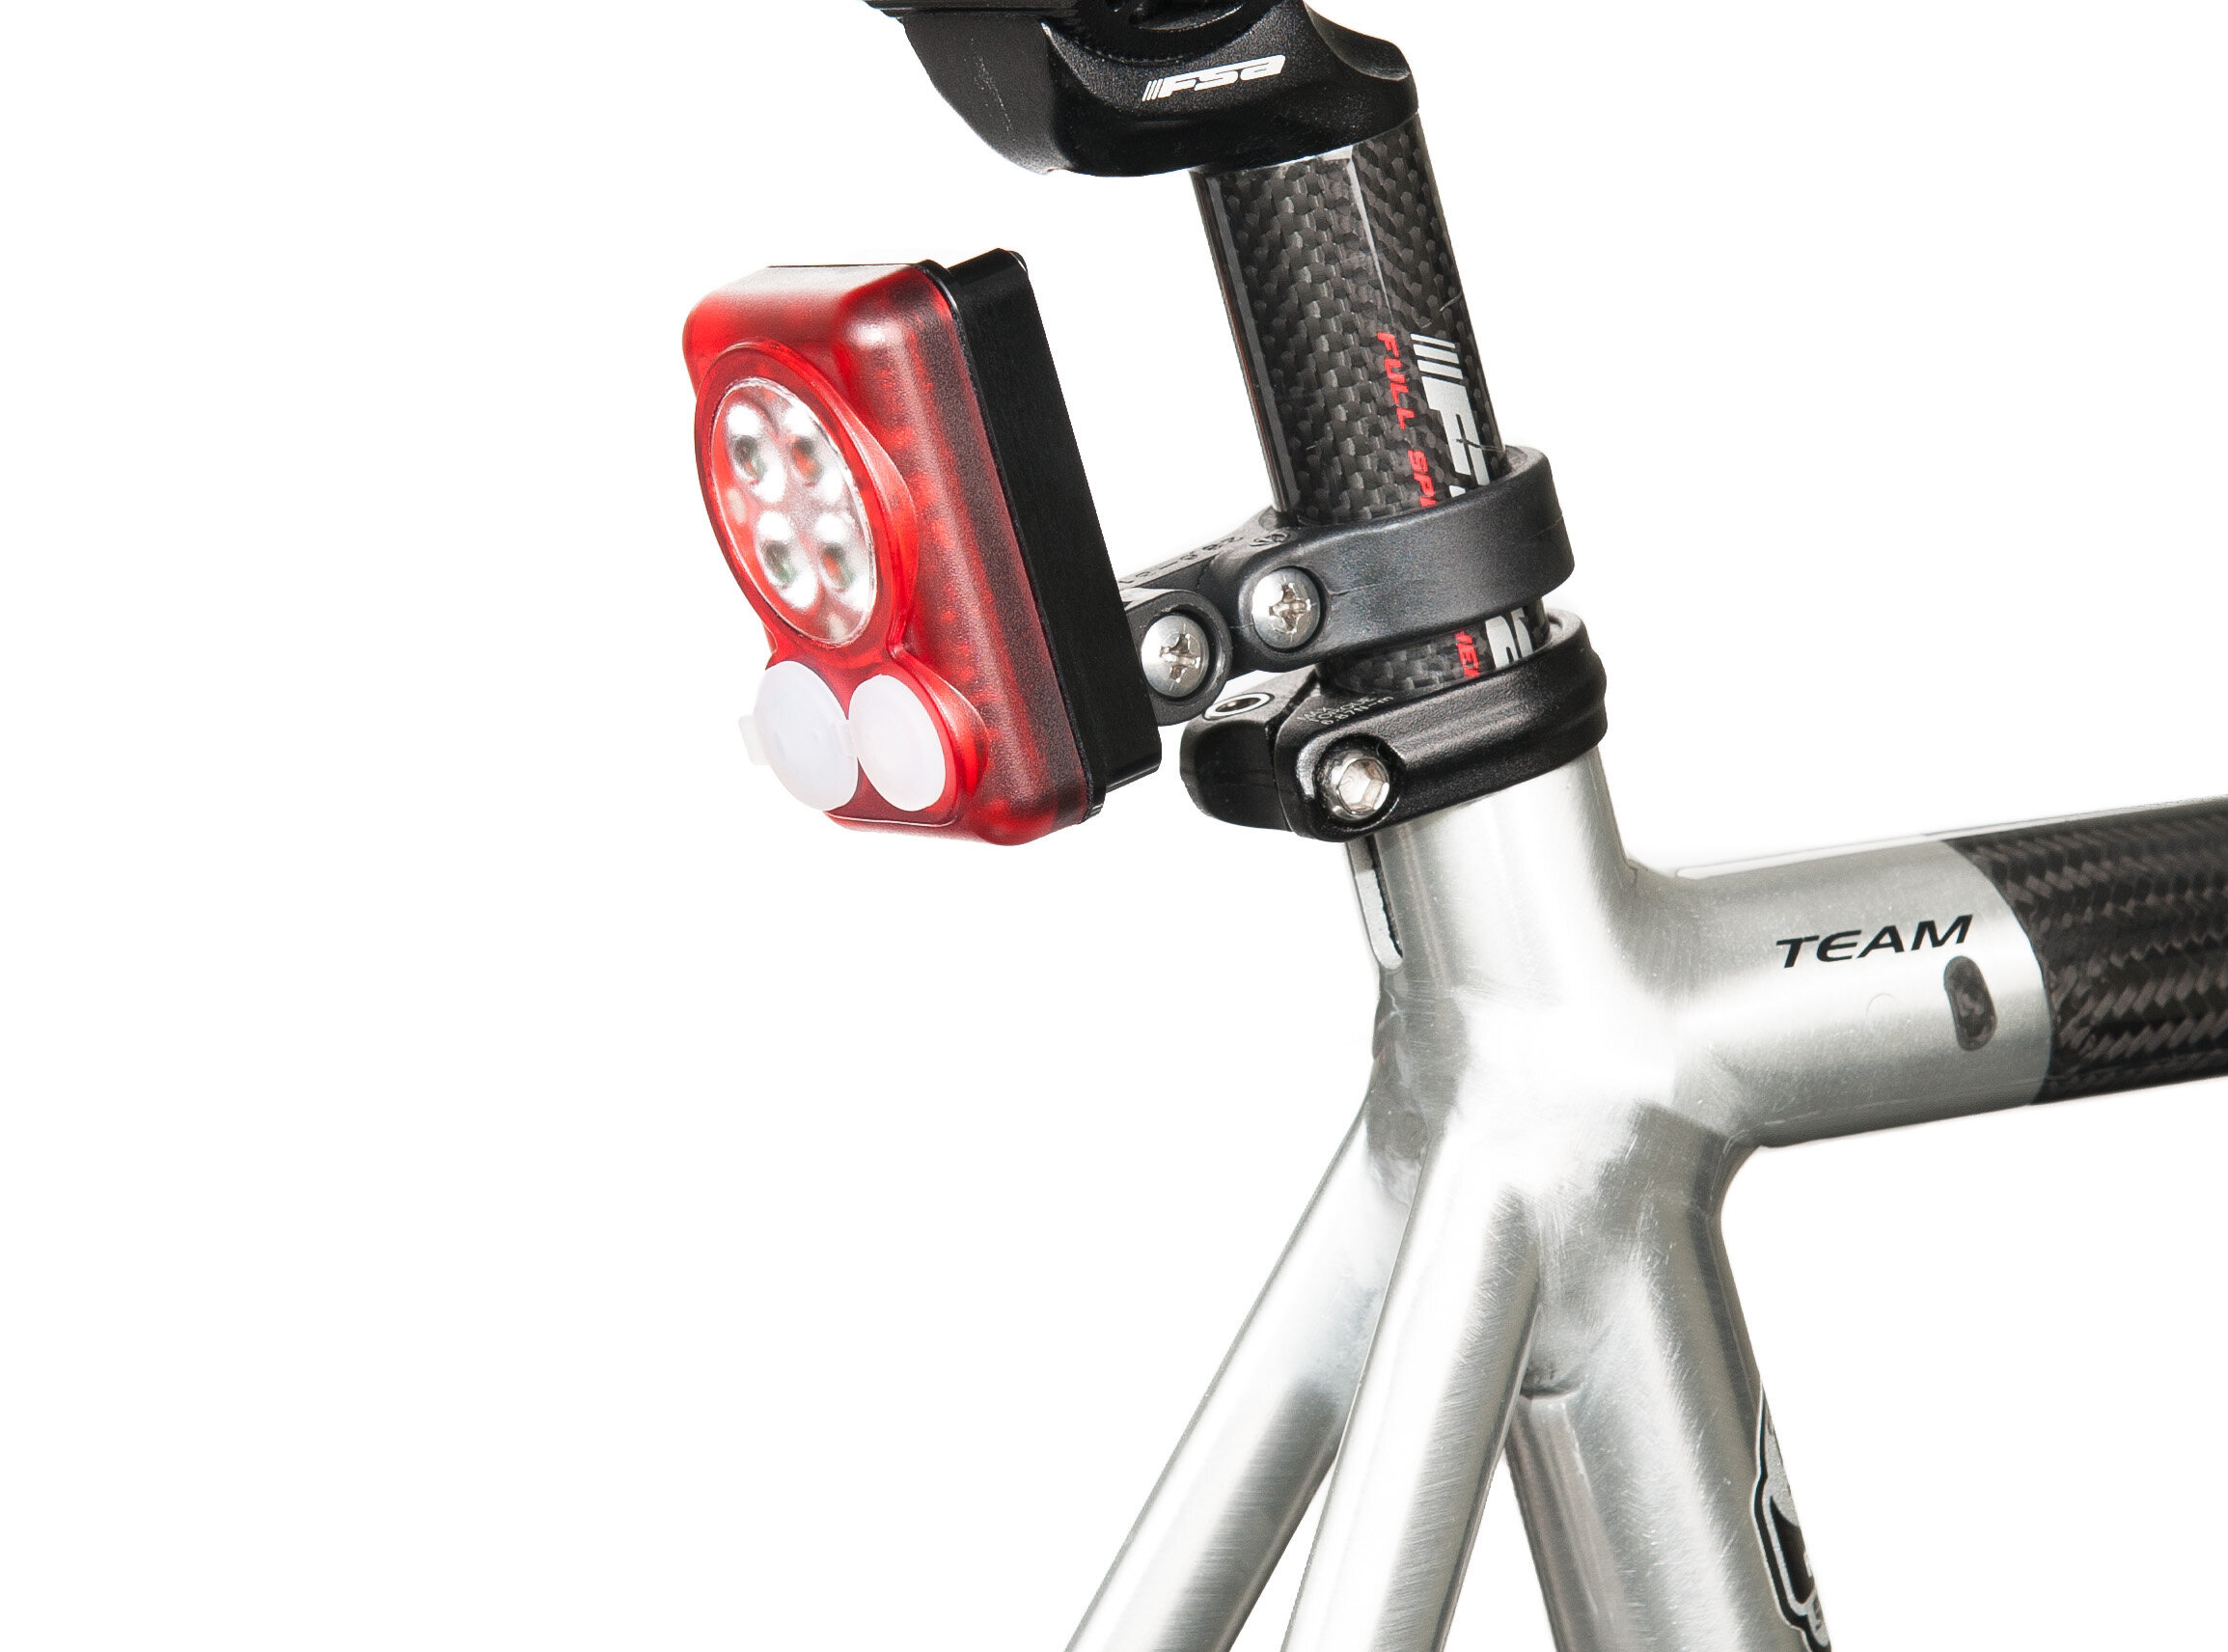 Still-Life-09-Commercial-Product-DiNotte-Lighting-Bike-Light-Taillight.jpg